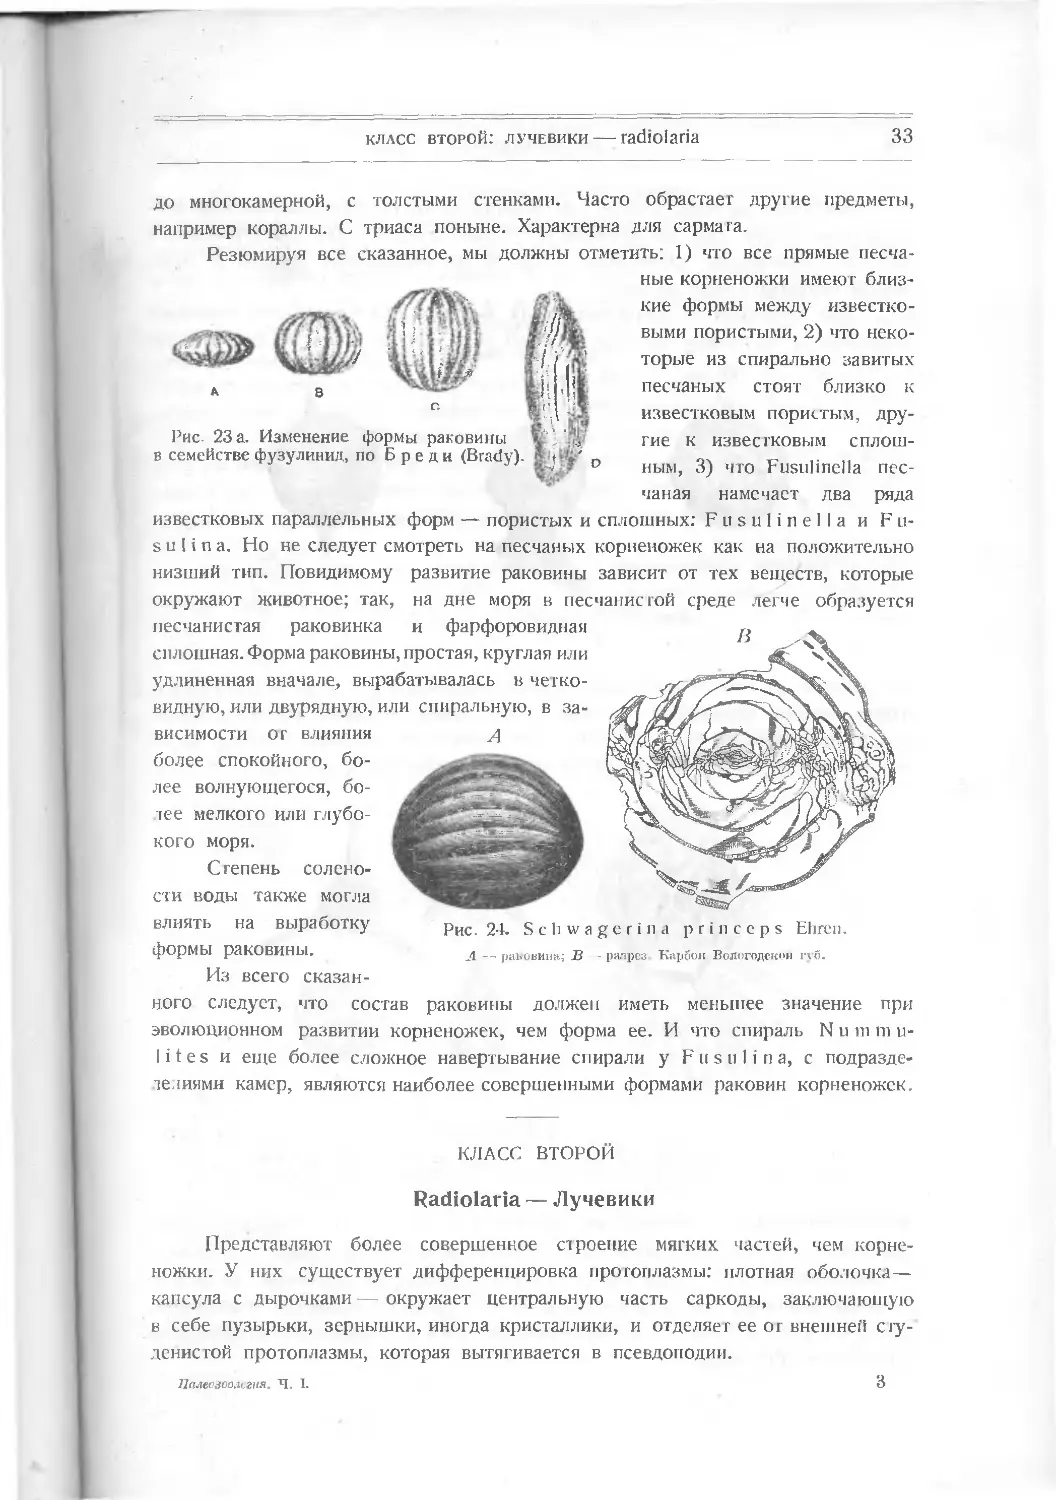 Класс второй. Radiolaria – Лучевики